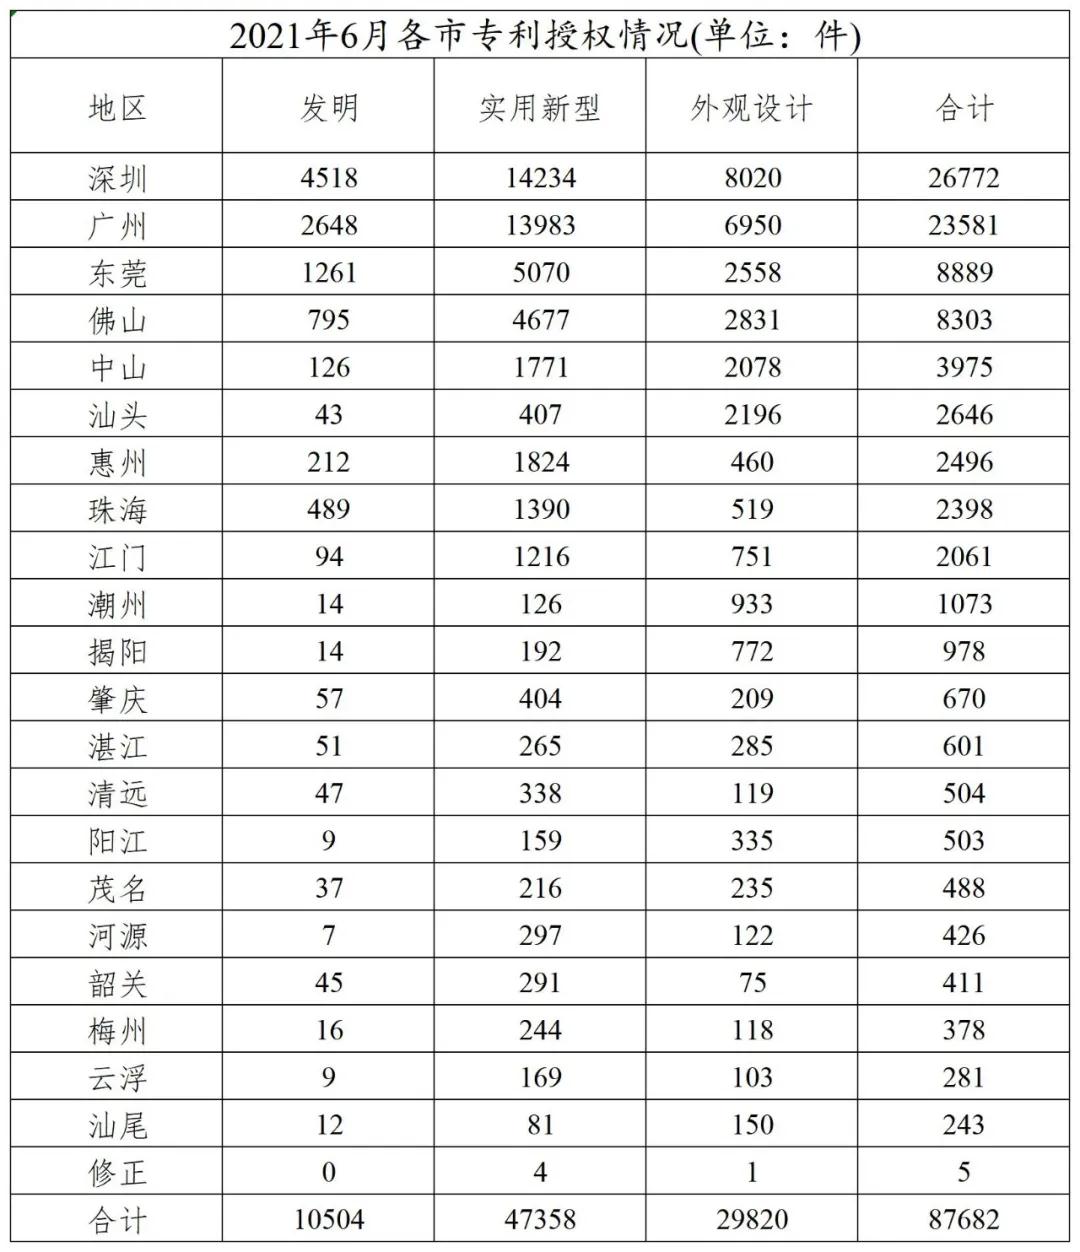 广东发布2021年1-6月各市专利授权情况